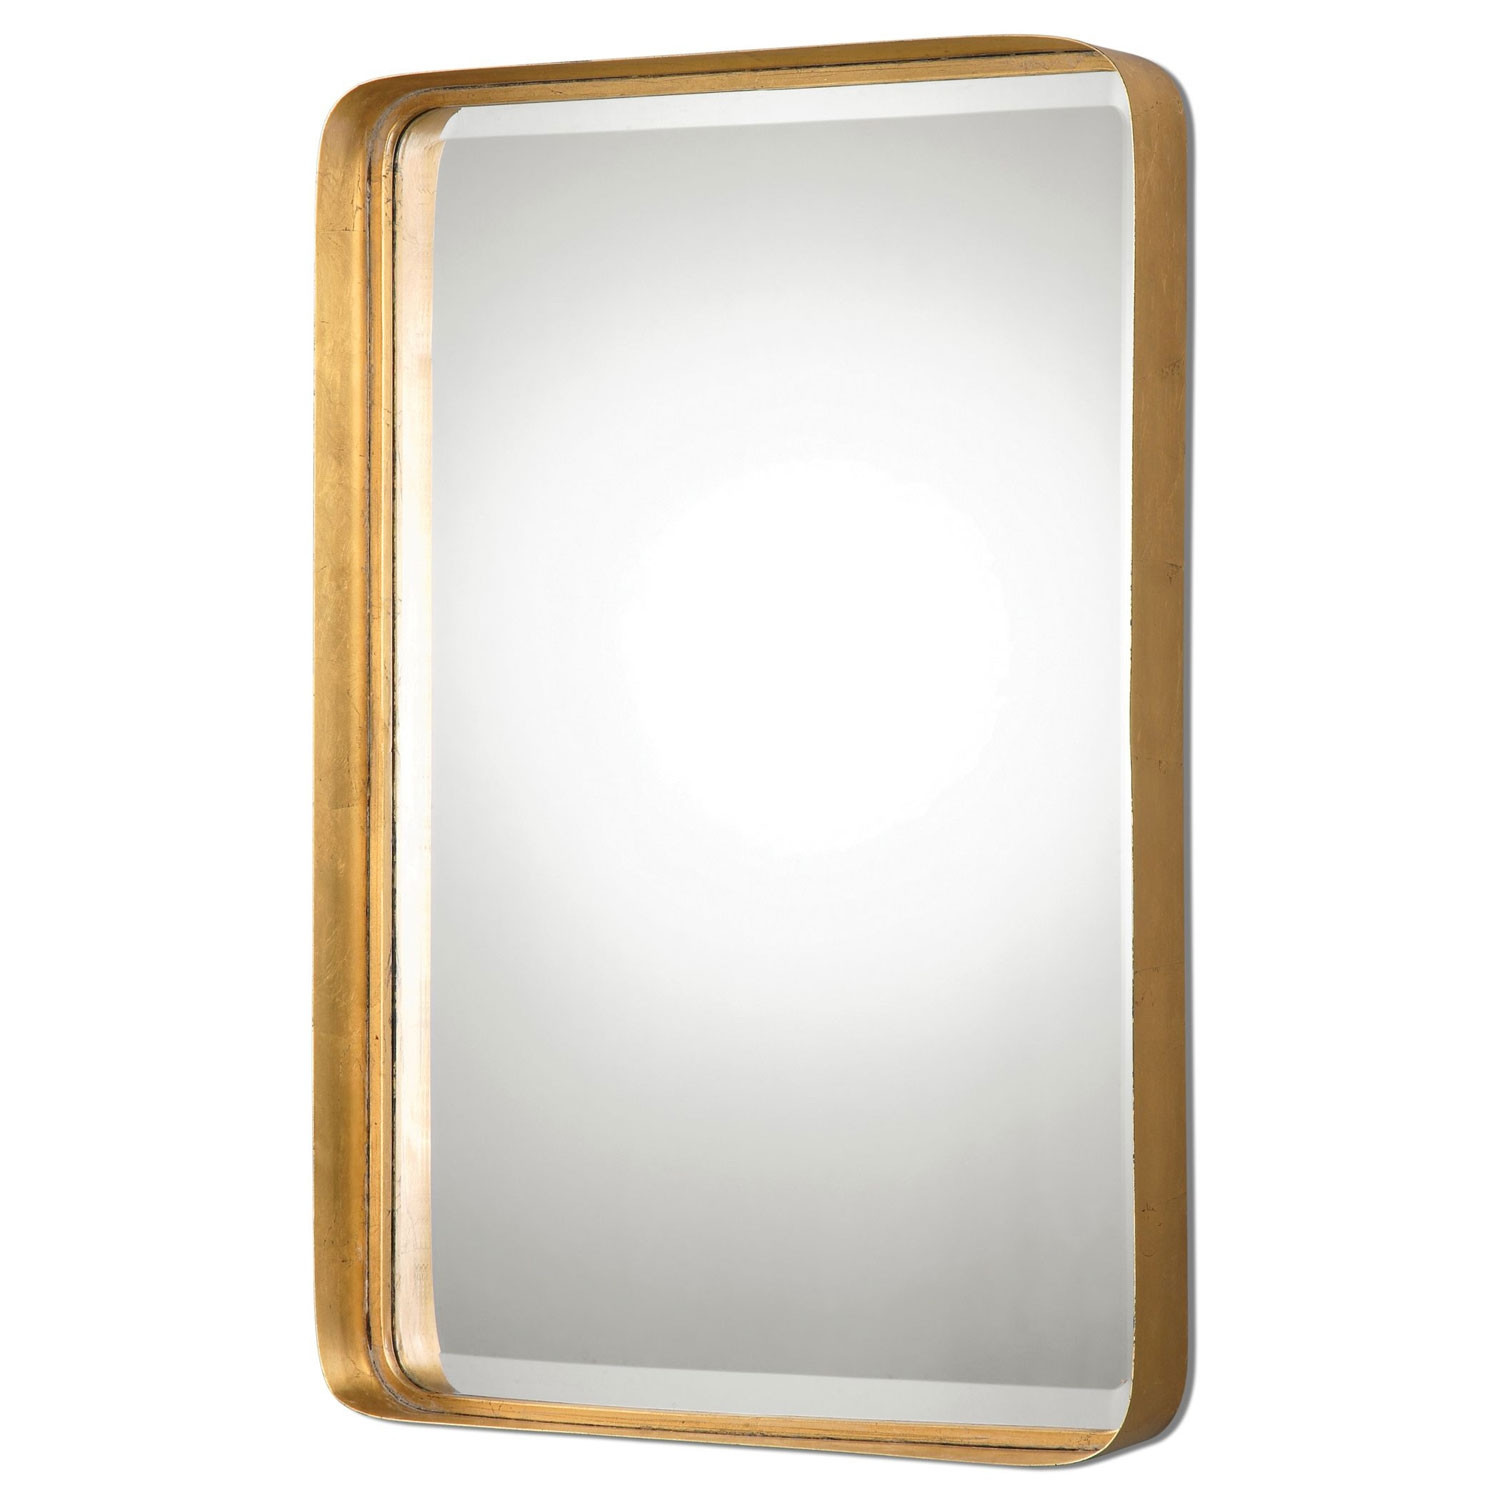 Brass Bathroom Mirror
 Brass Mirrors for Sale